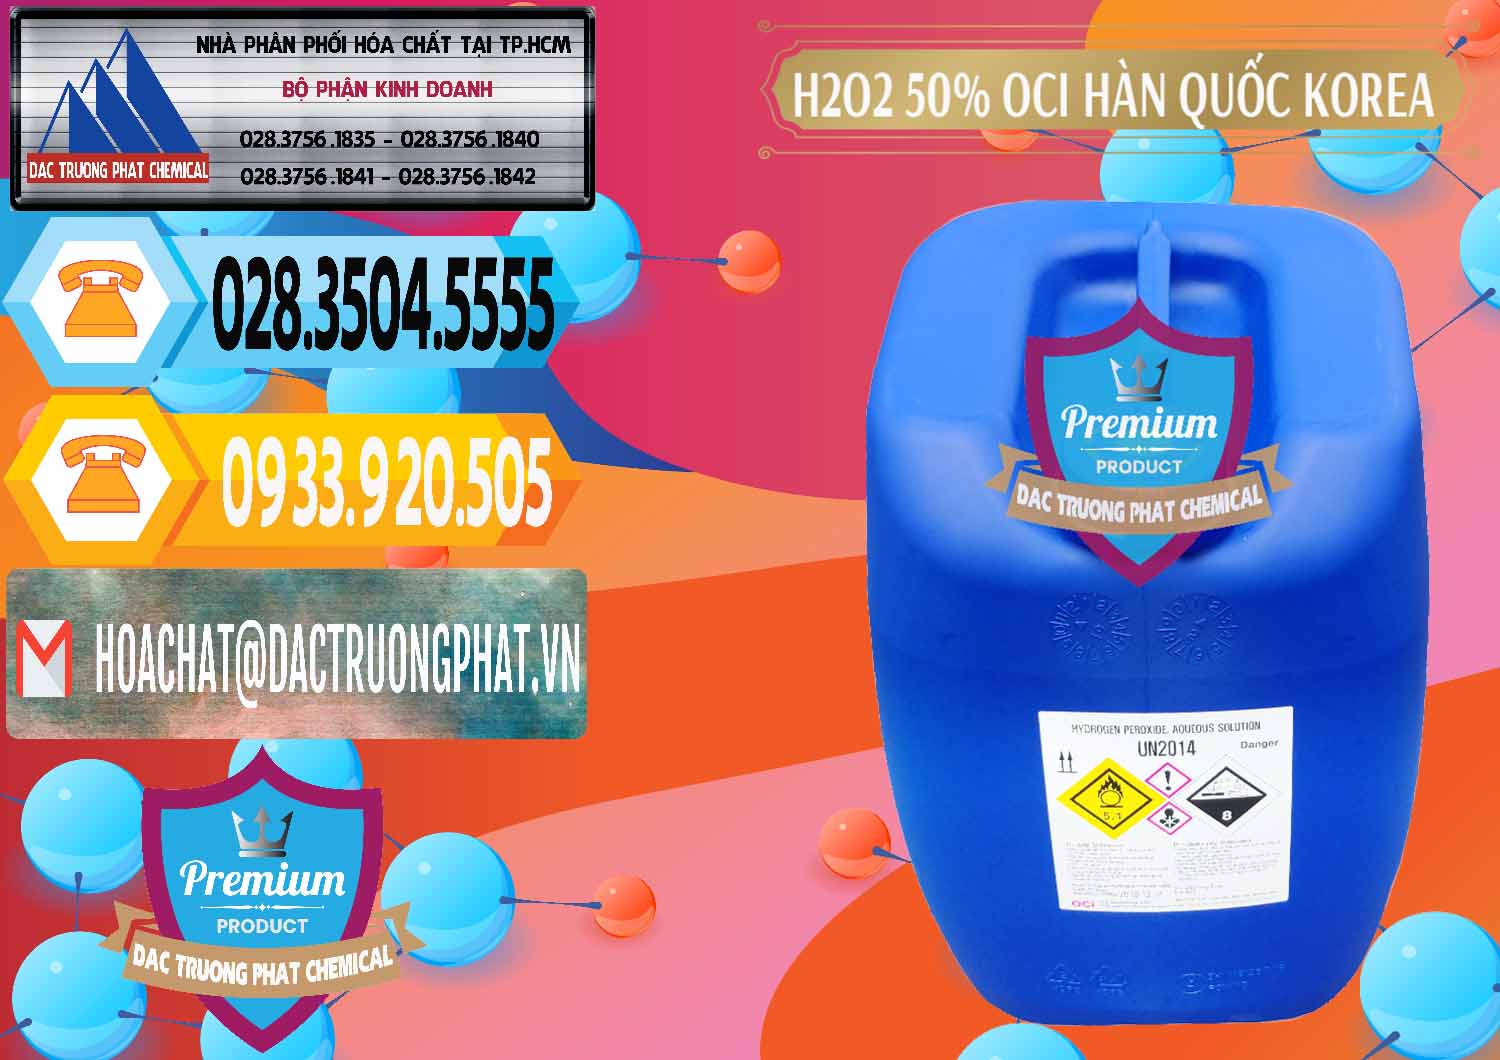 Công ty kinh doanh và bán H2O2 - Hydrogen Peroxide 50% OCI Hàn Quốc Korea - 0075 - Nơi bán & cung cấp hóa chất tại TP.HCM - hoachattayrua.net